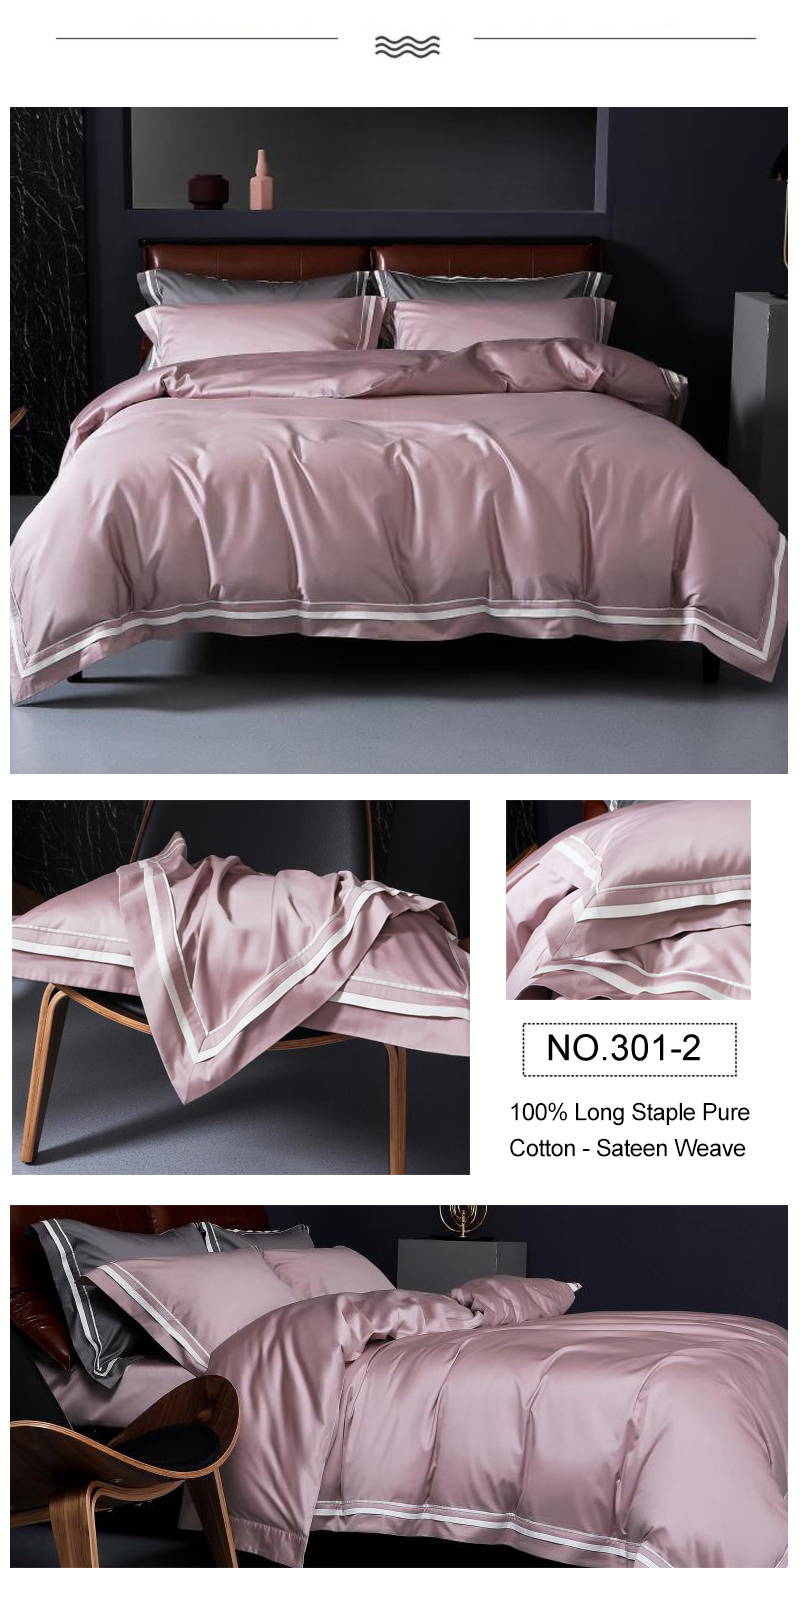 Softness Bedding Match color